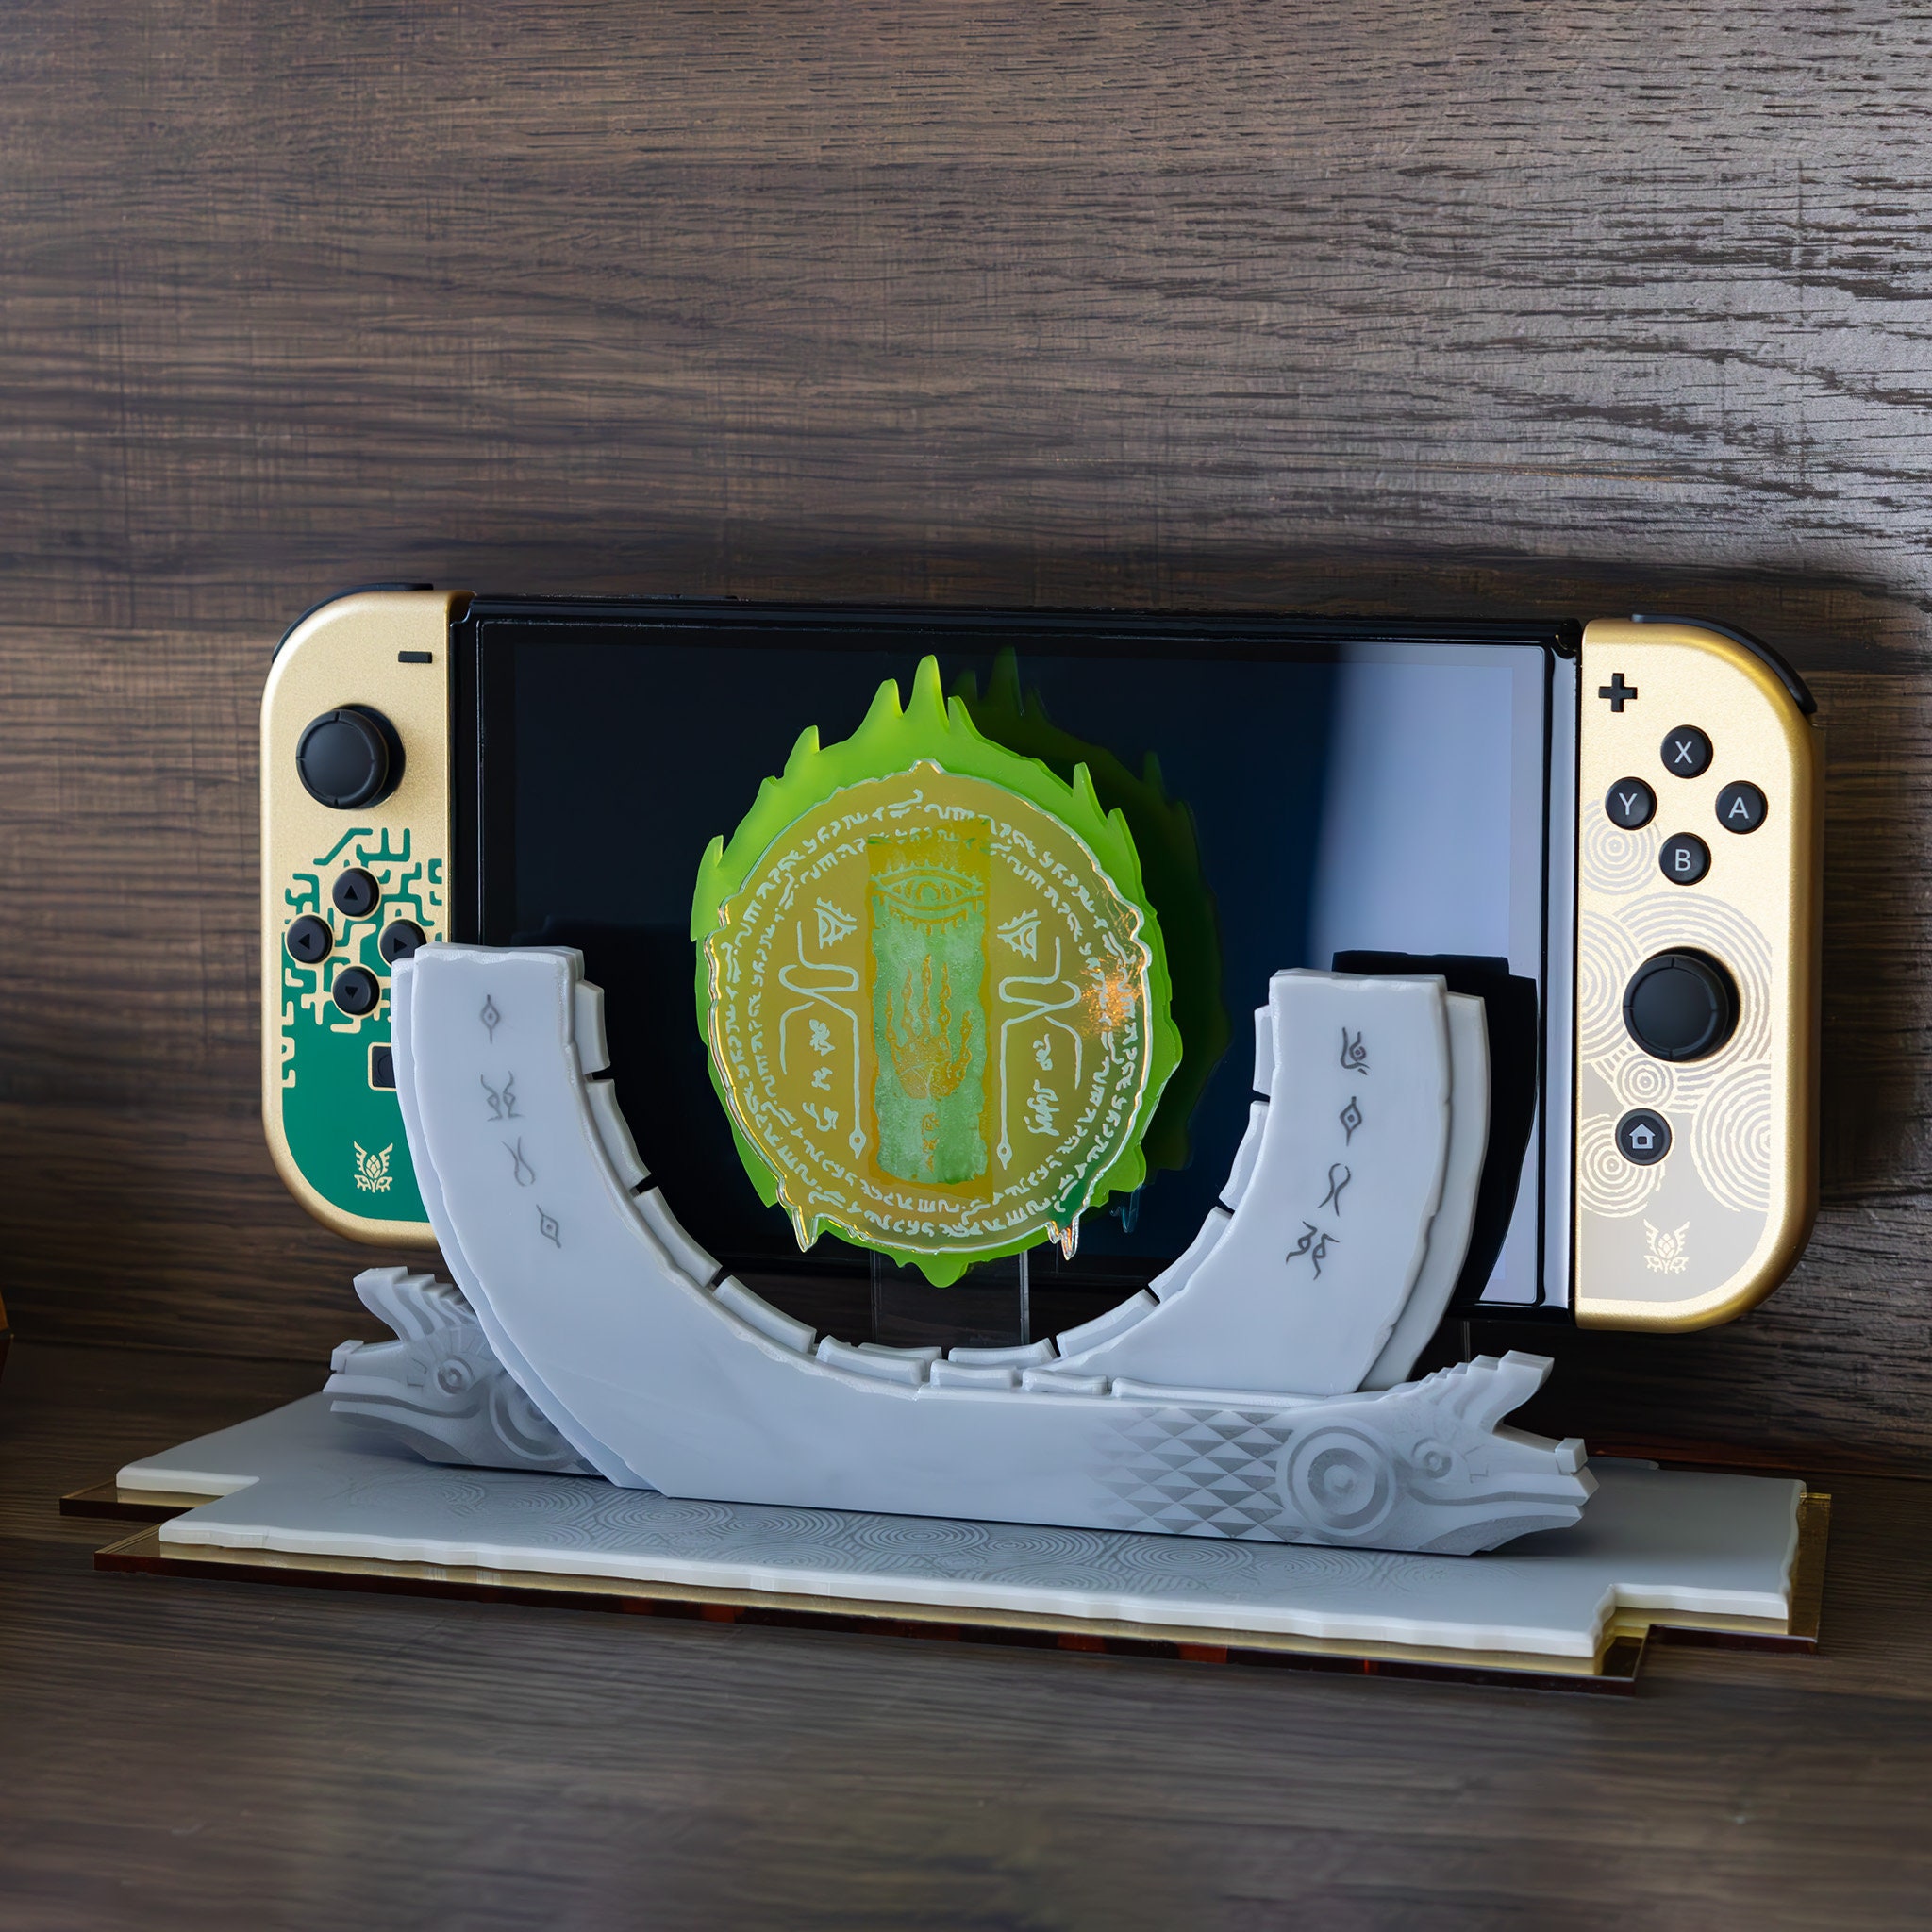 ITEM] Nintendo Switch (TOTK) [The Legend of Zelda: Breath of the